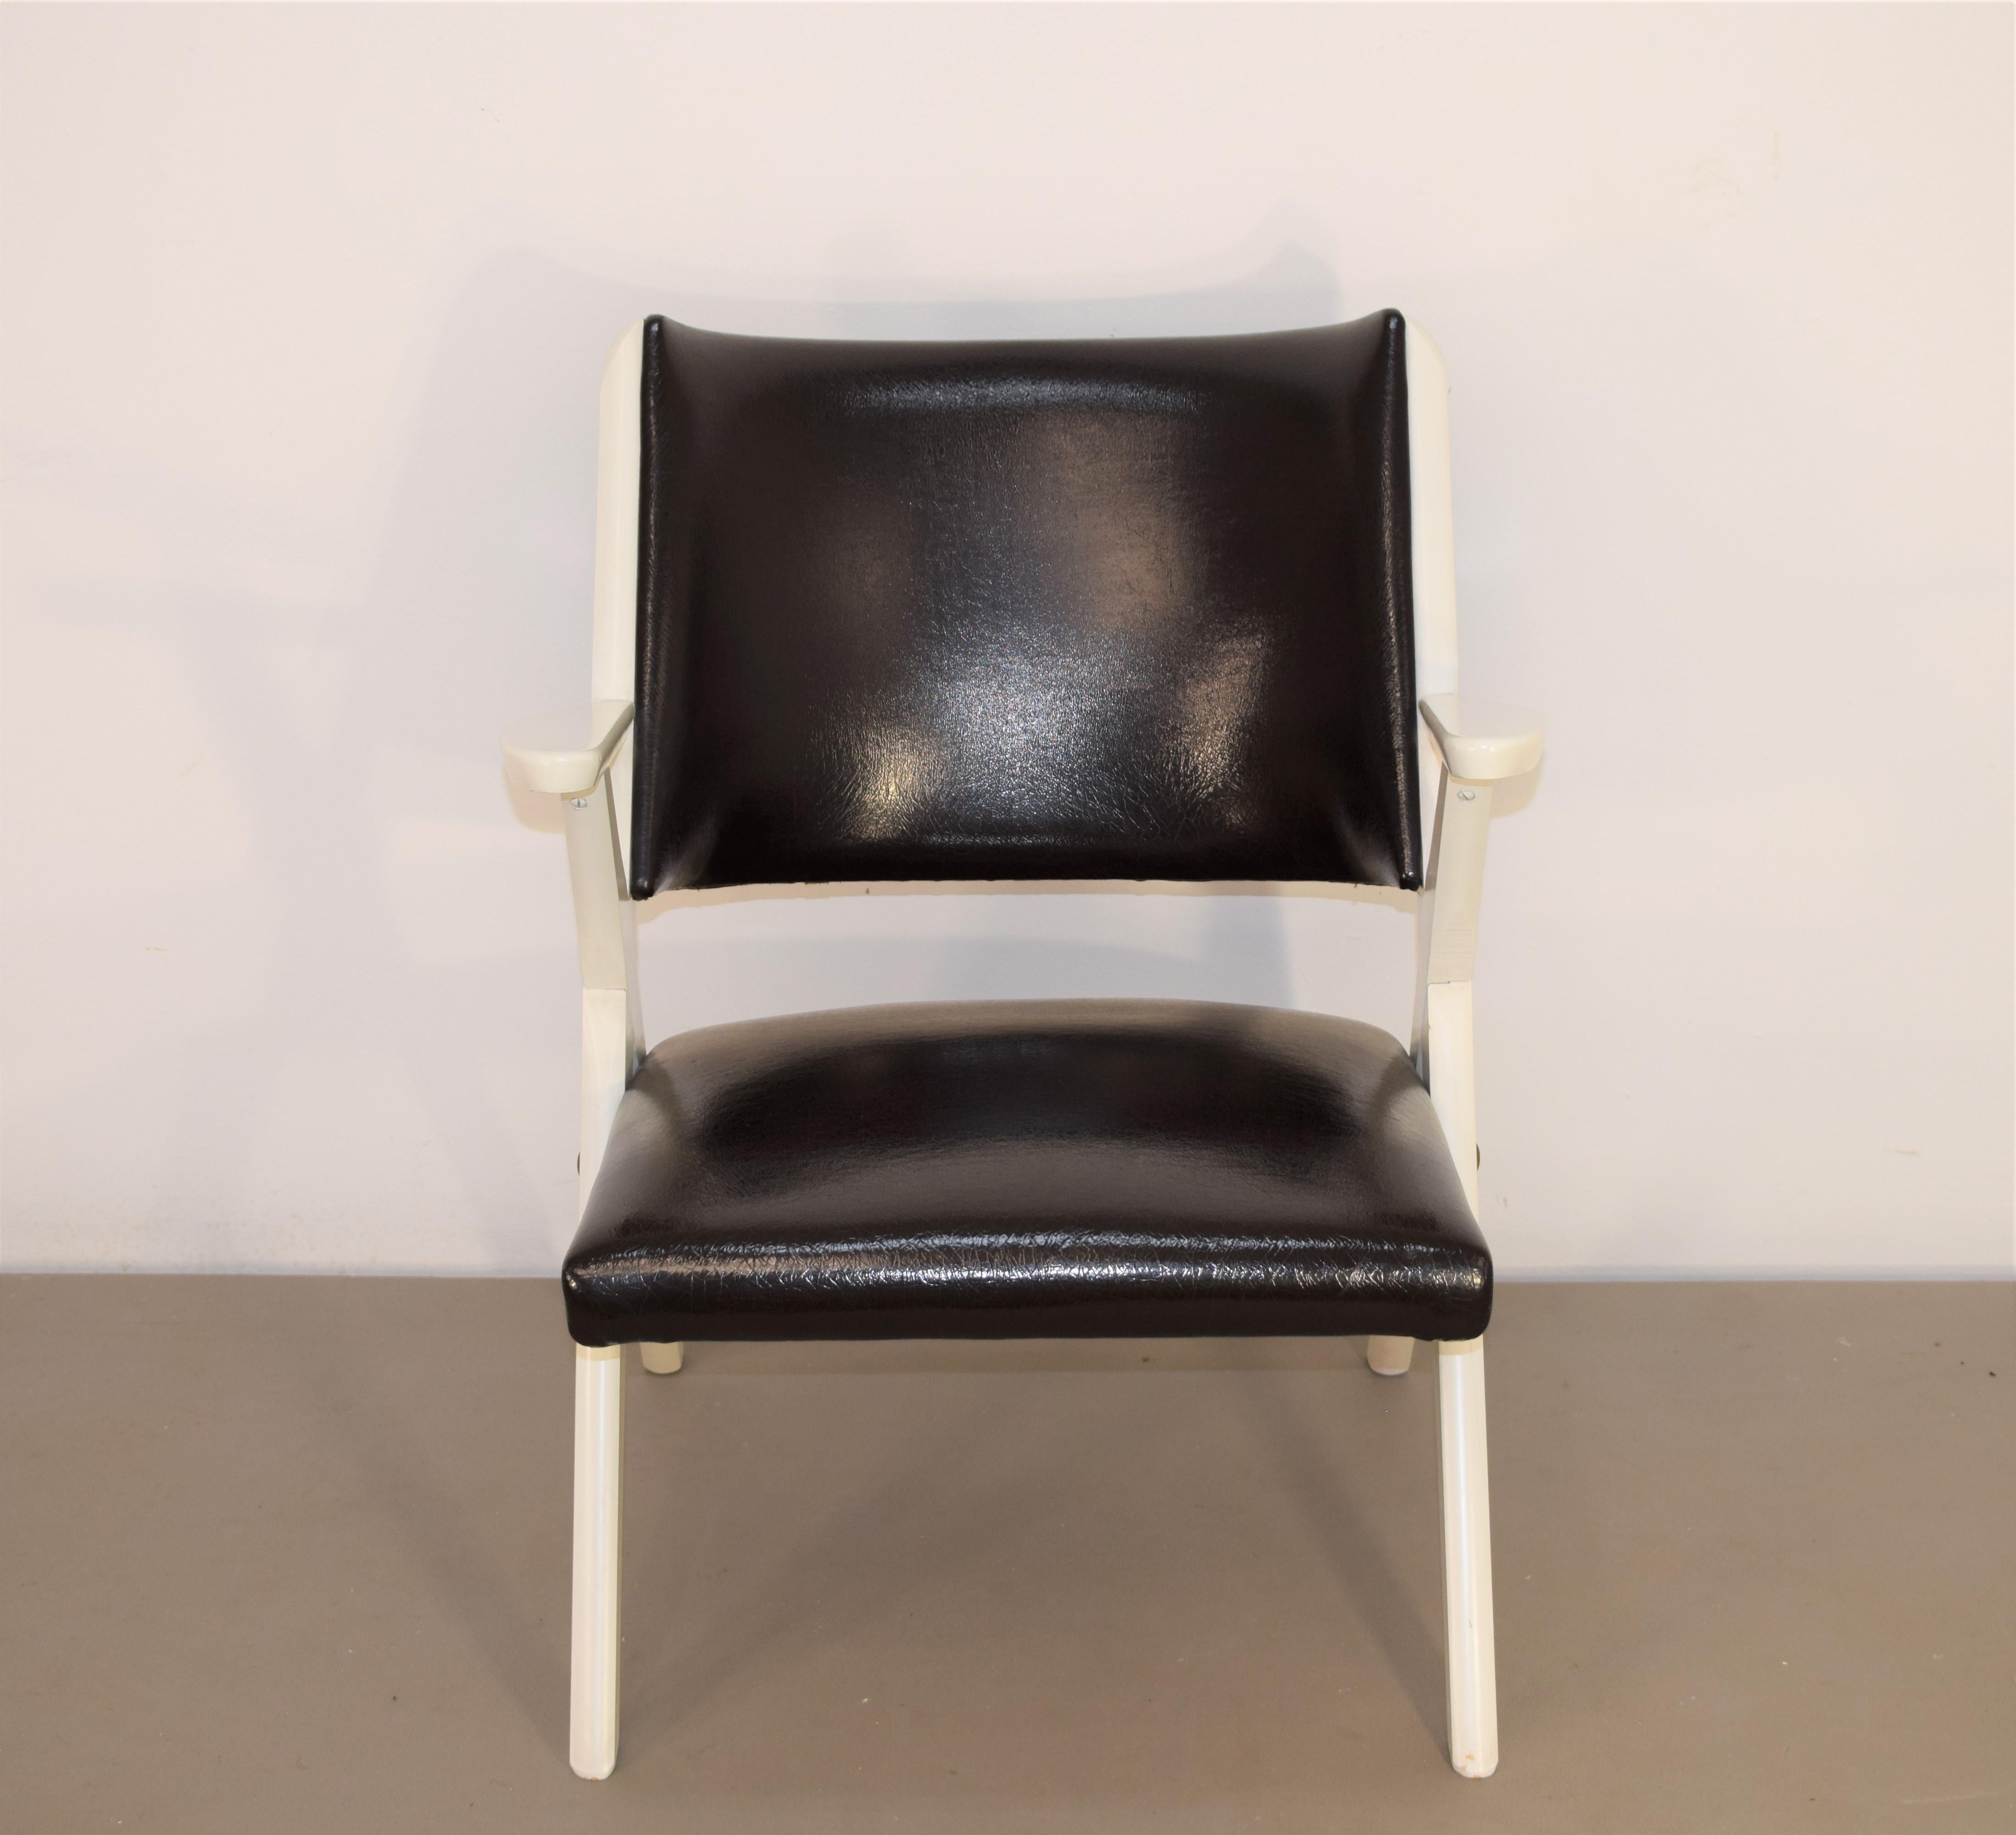 Ensemble de 2 fauteuils italiens par Dal Vera, années 1950
Dimensions : H= 74 cm ; siège H= 38 cm ; L= 58 cm ; P= 64 cm.